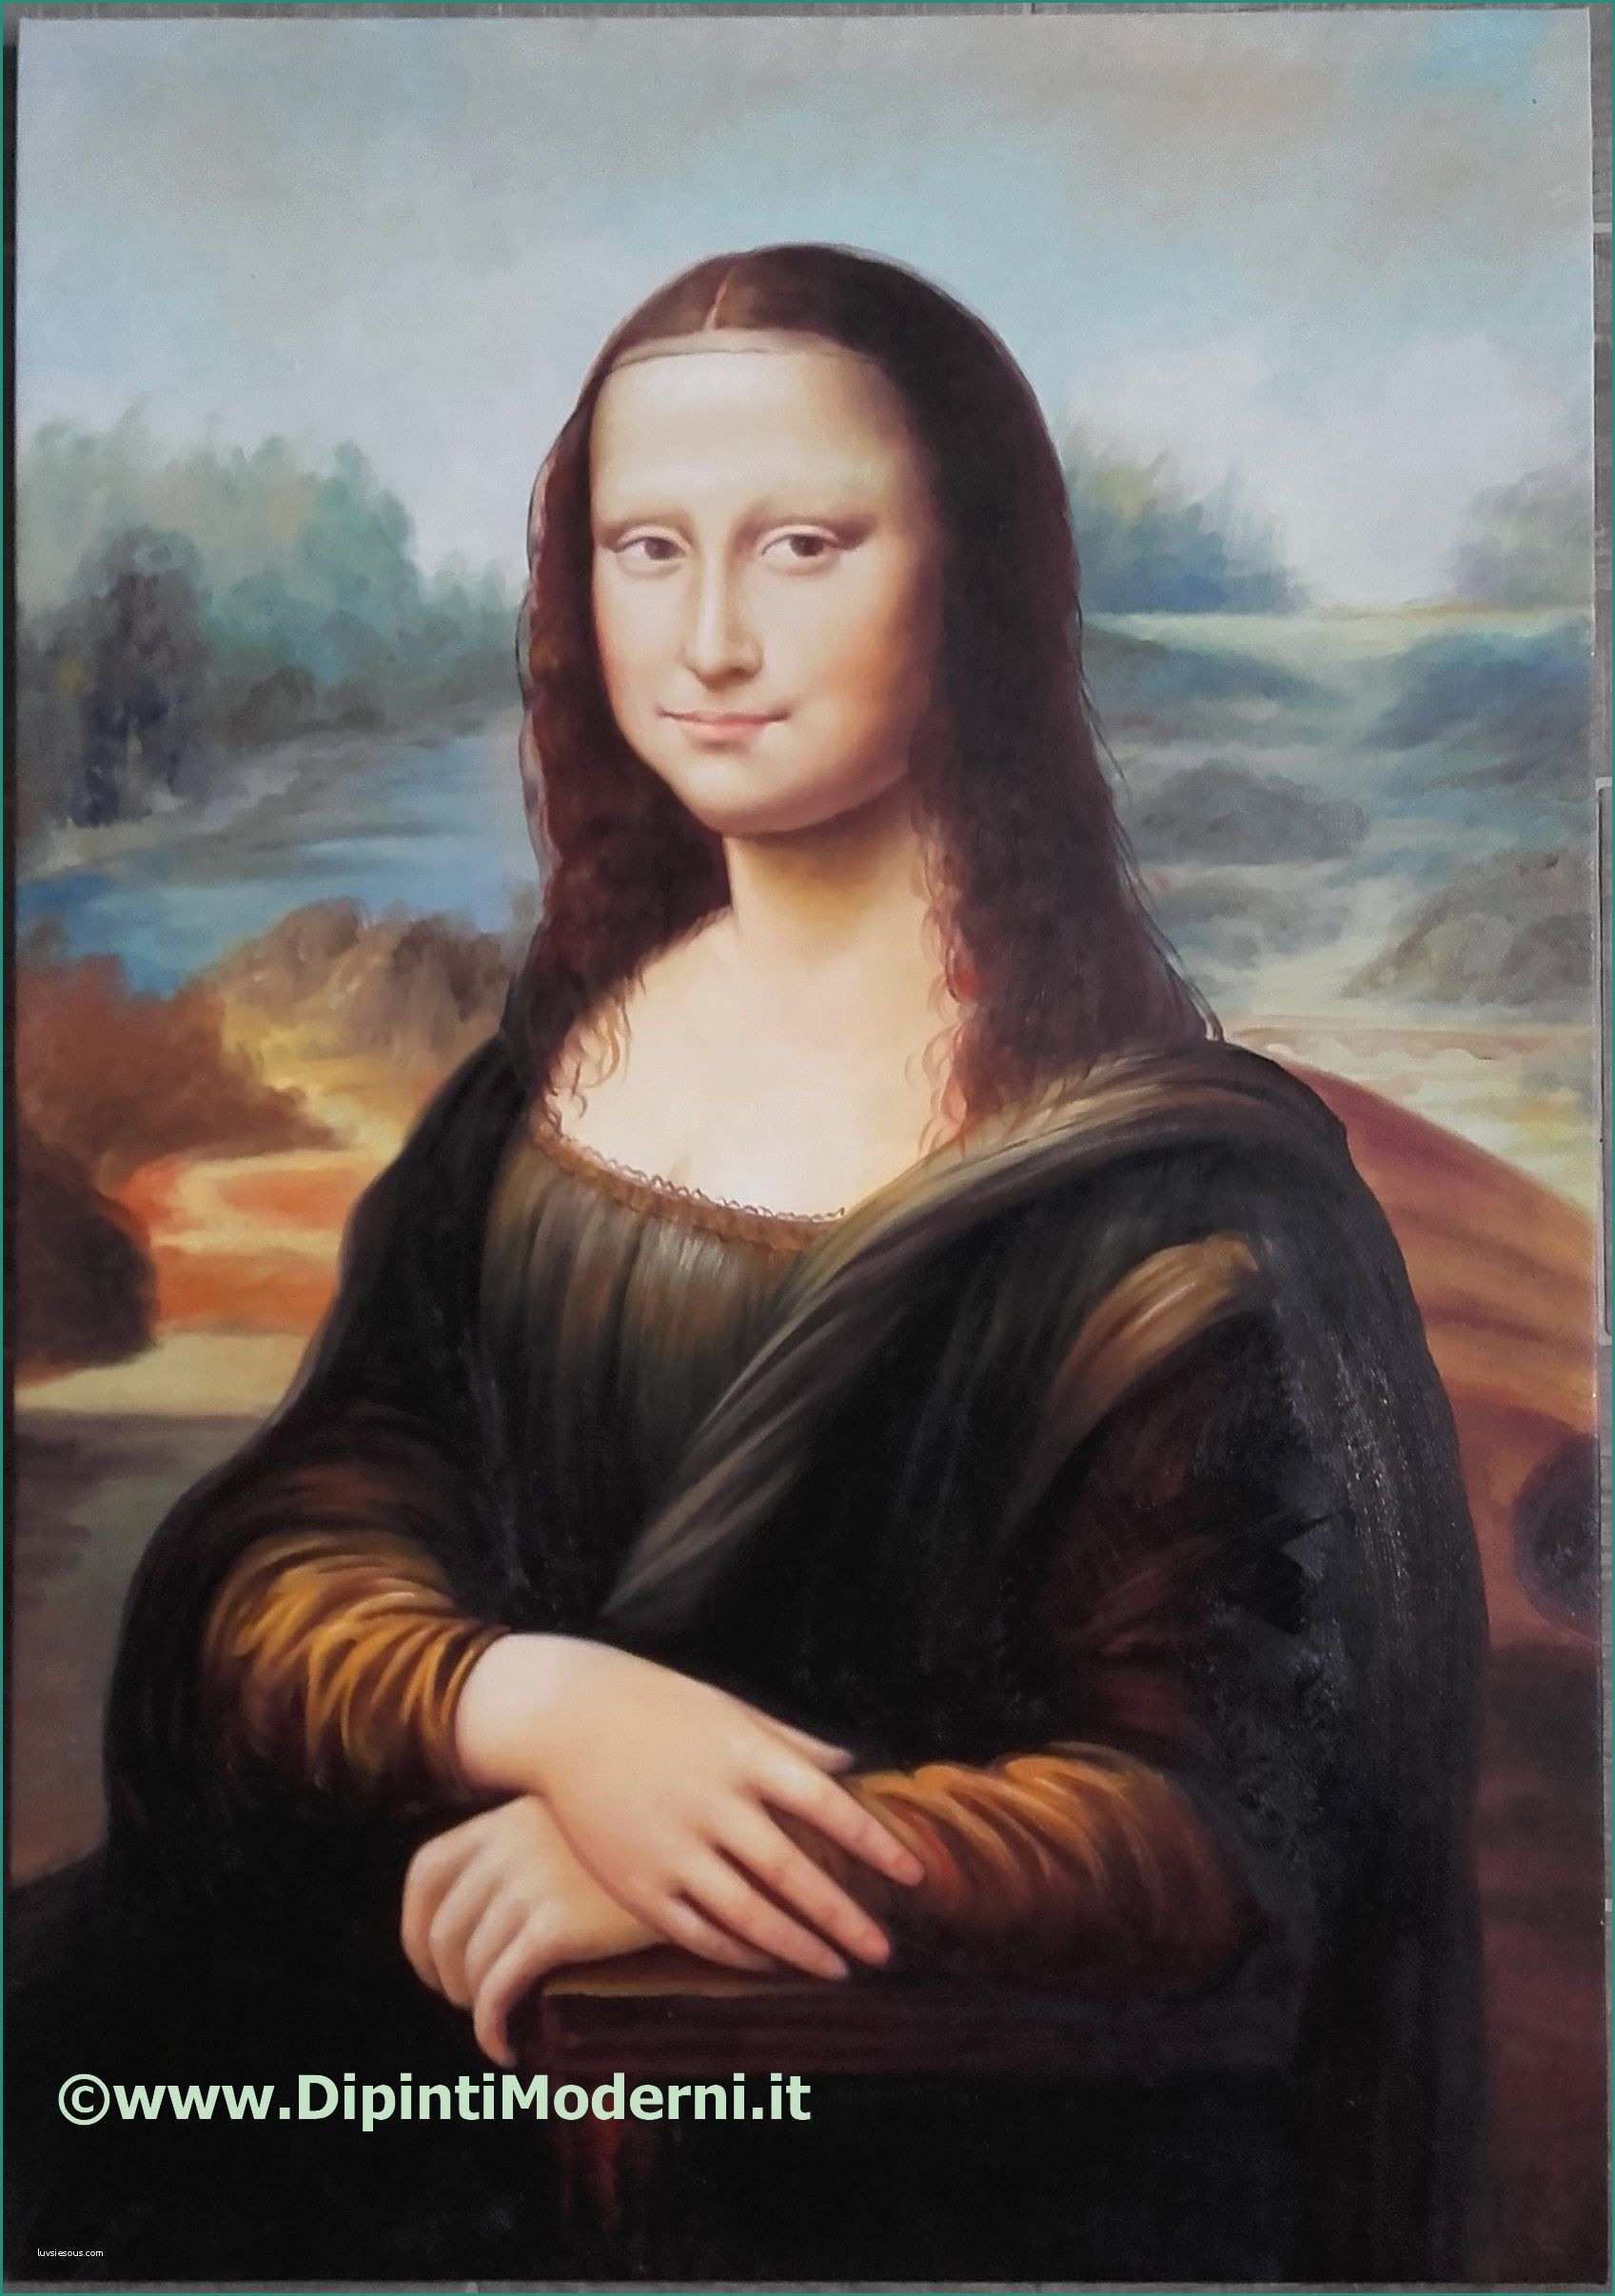 Immagini Di Quadri Famosi E Blog Dipintimoderni La Gioconda Di Leonardo Da Vinci